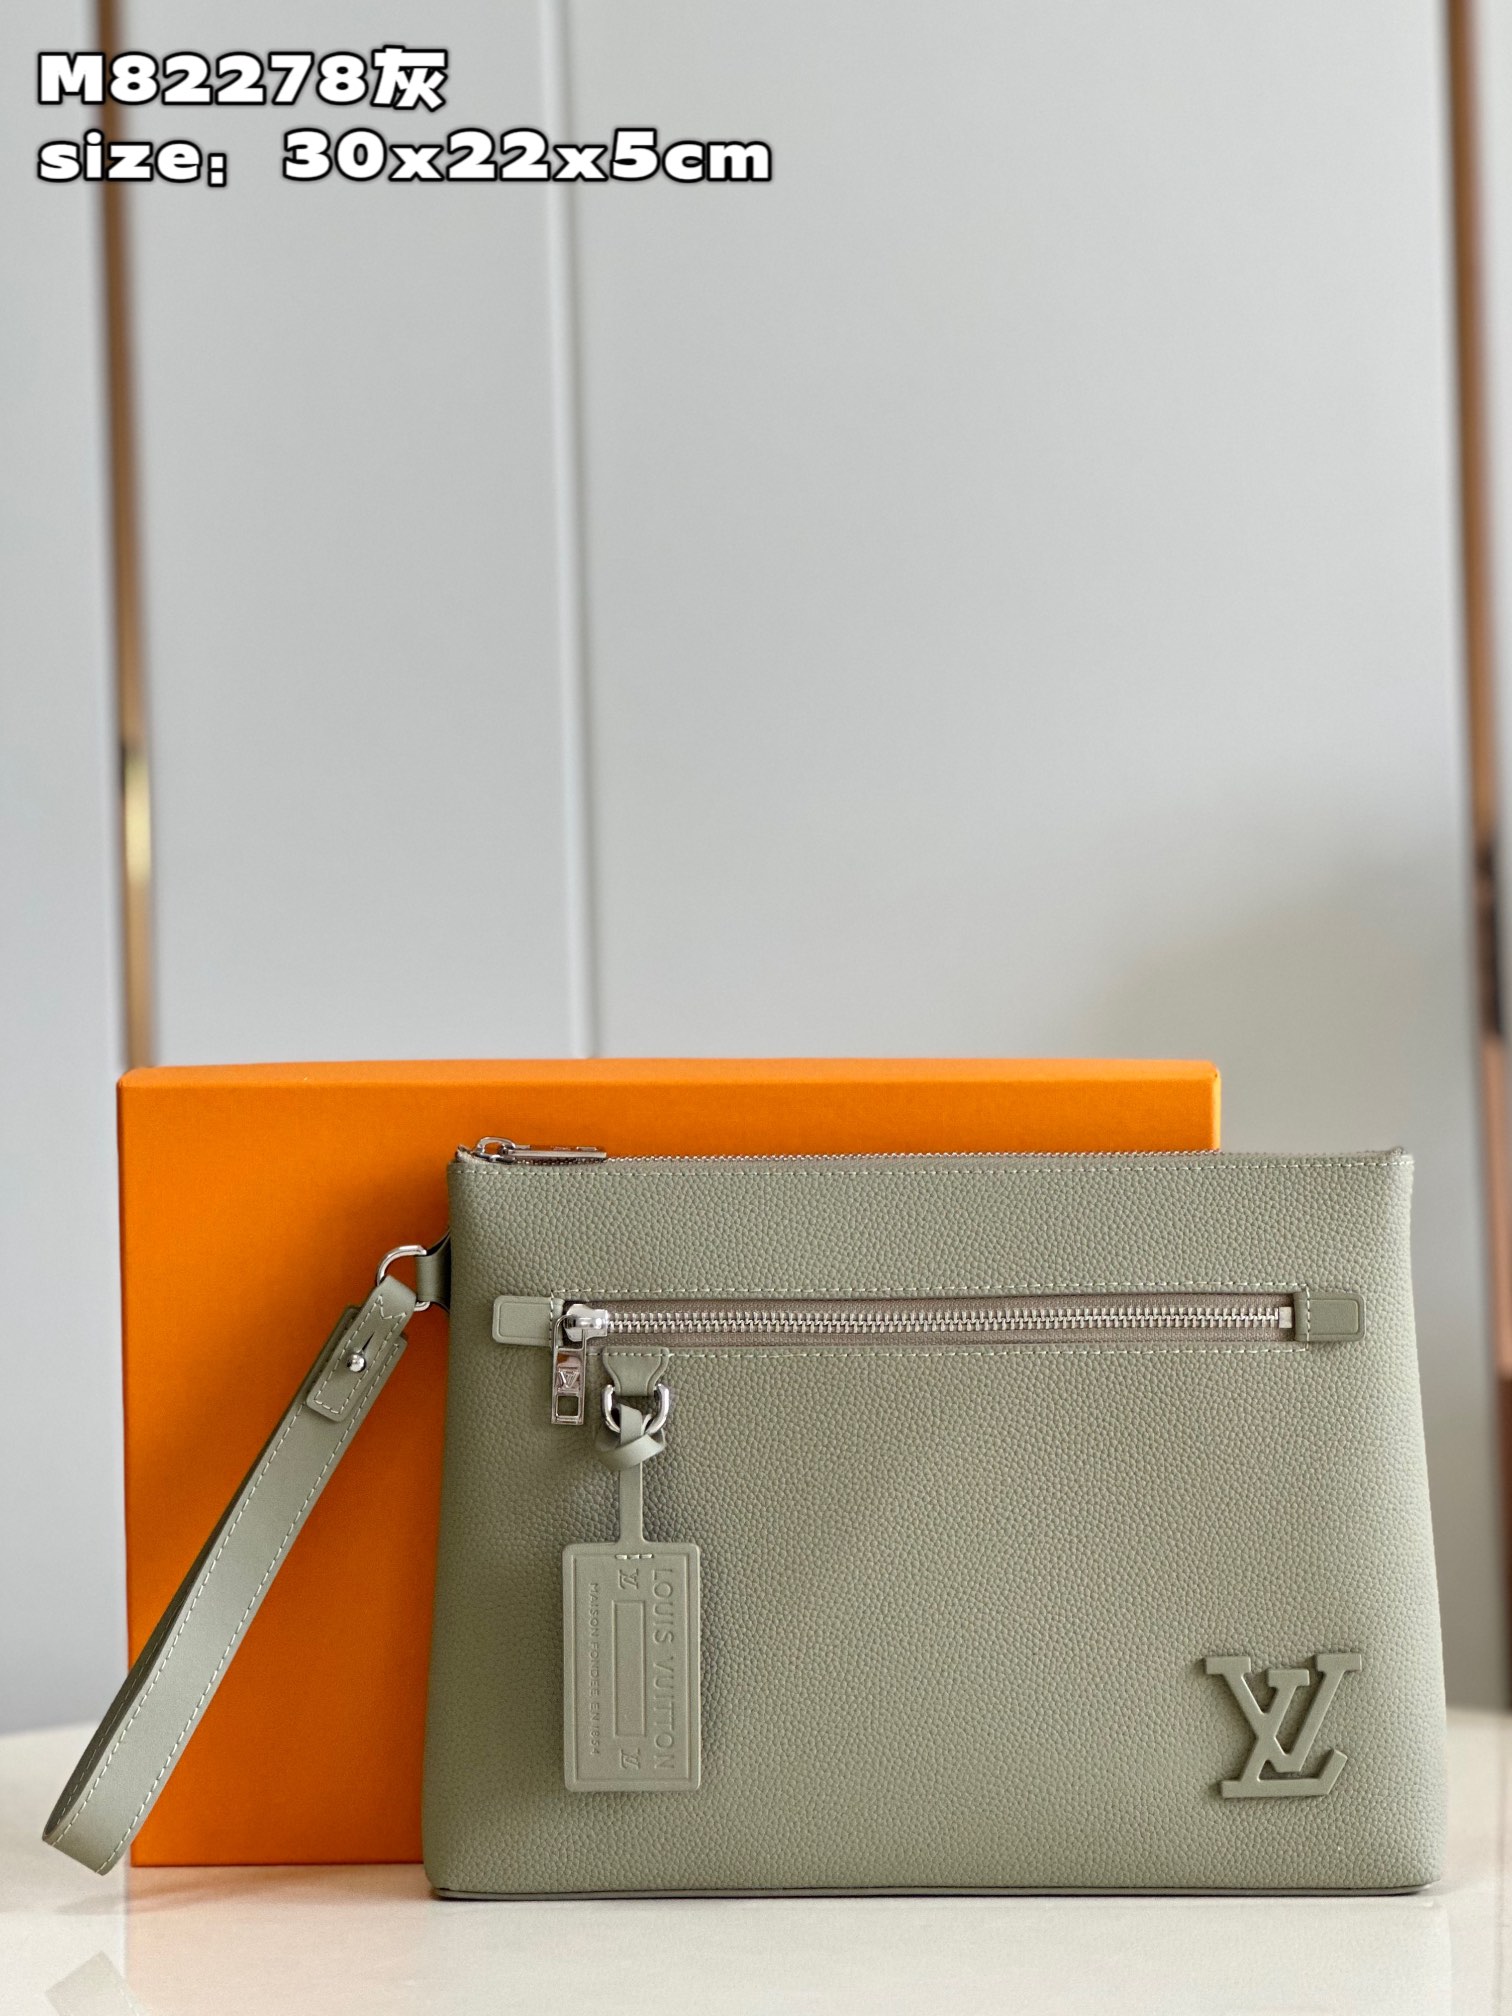 Online Sales
 Louis Vuitton Clutches & Pouch Bags Grey M82278